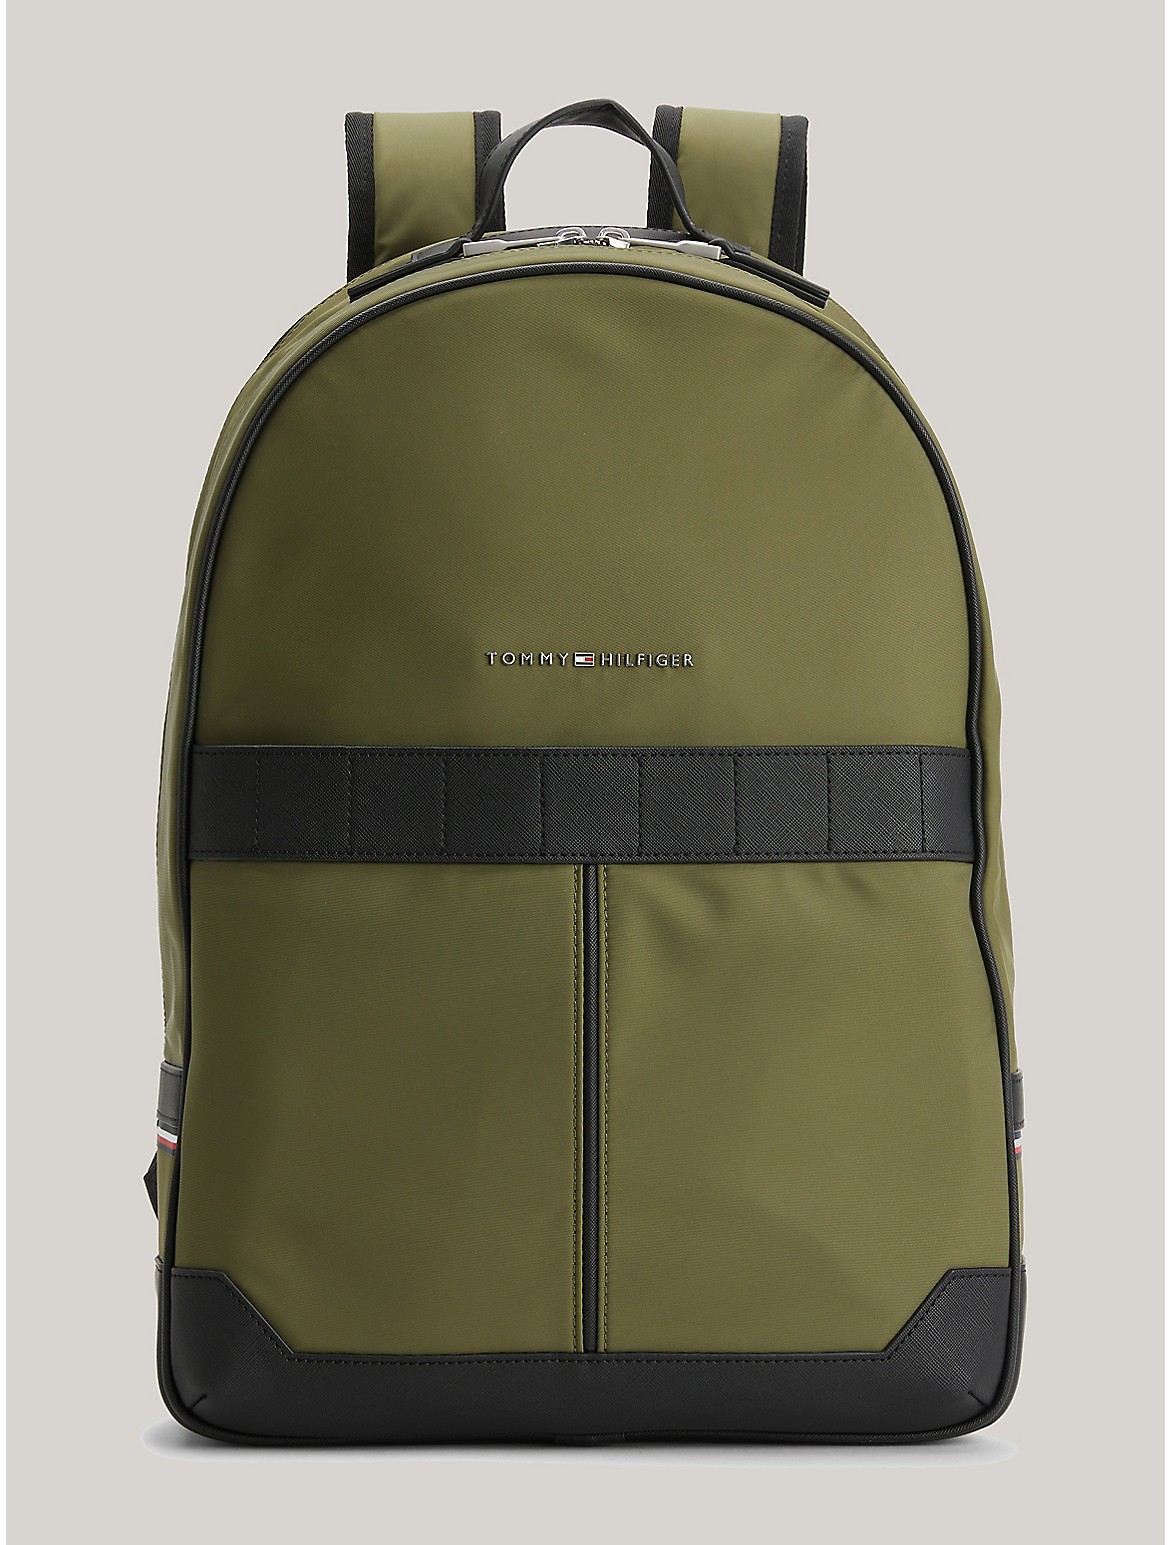 Tommy Hilfiger Men's Commuter Nylon Backpack - Green